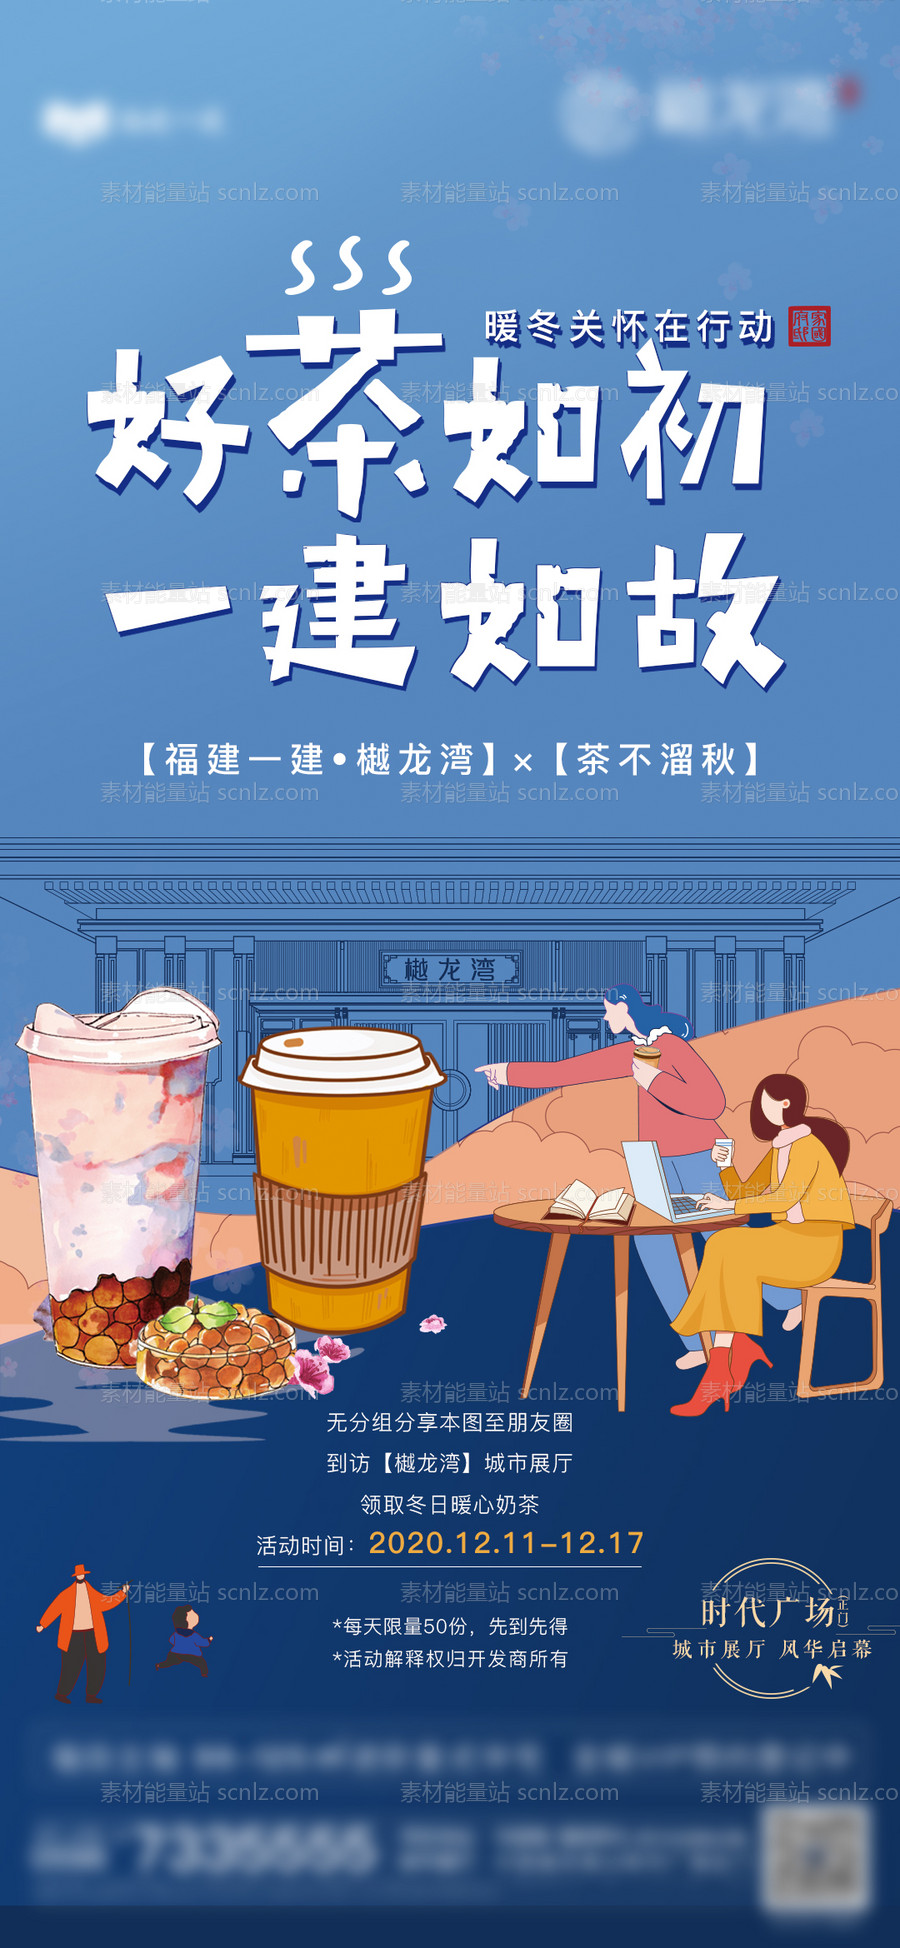 素材能量站-奶茶活动海报